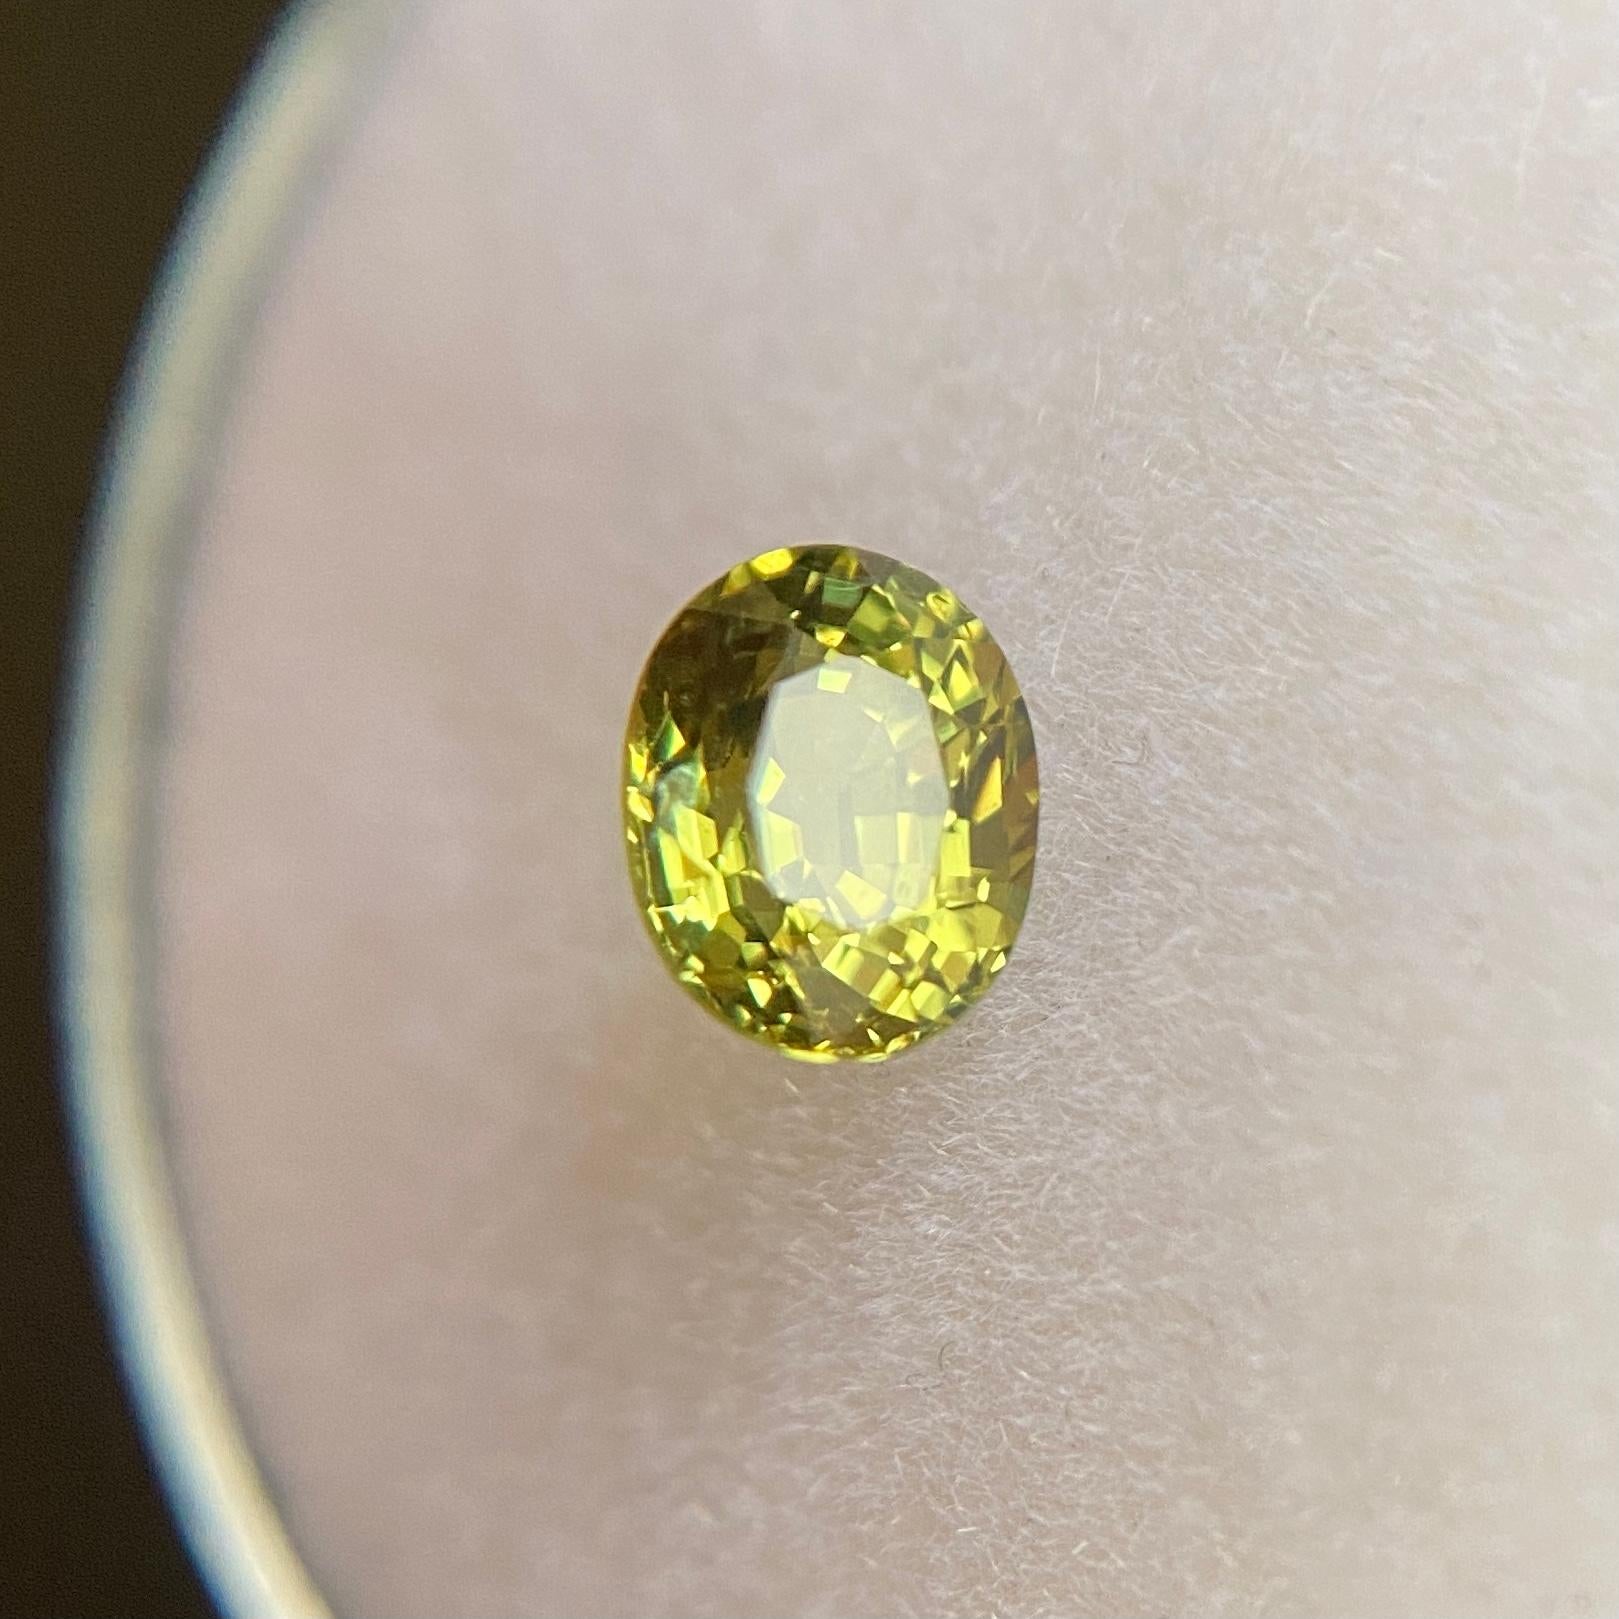 Fine Natural Untreated Yellow Green Australian Sapphire Edelstein.

0.80 Karat mit einer schönen, lebhaften gelbgrünen Farbe und ausgezeichneter Reinheit, ein sehr sauberer Stein.

Außerdem hat er einen ausgezeichneten ovalen Schliff und einen